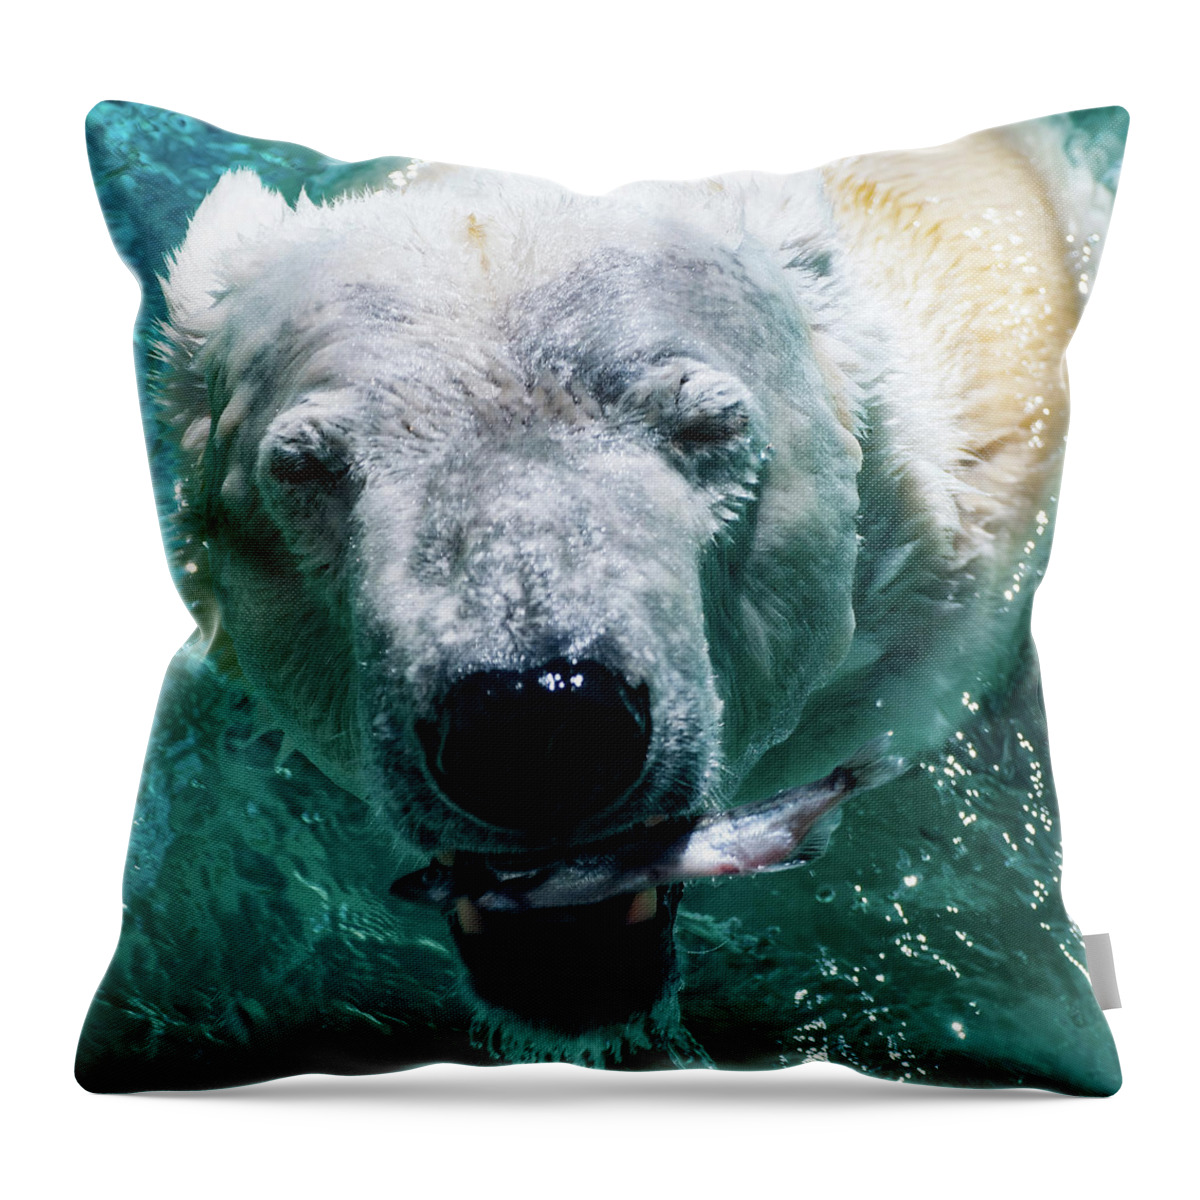 Polar Bear Portrait Throw Pillow featuring the photograph Polar Bear Portrait 001 by Flees Photos